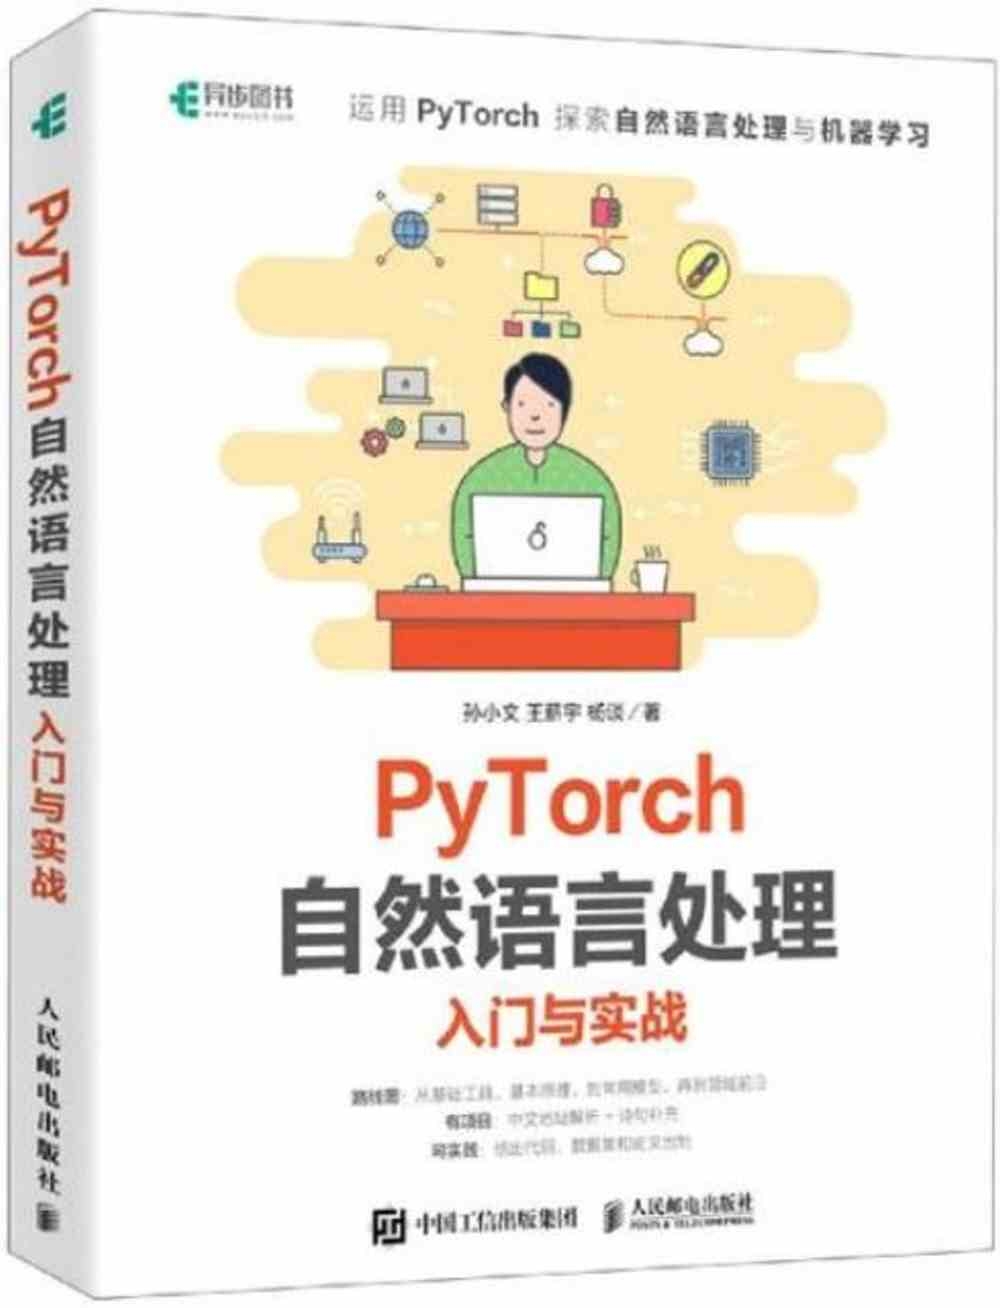 PyTorch自然語言處理入門與實戰